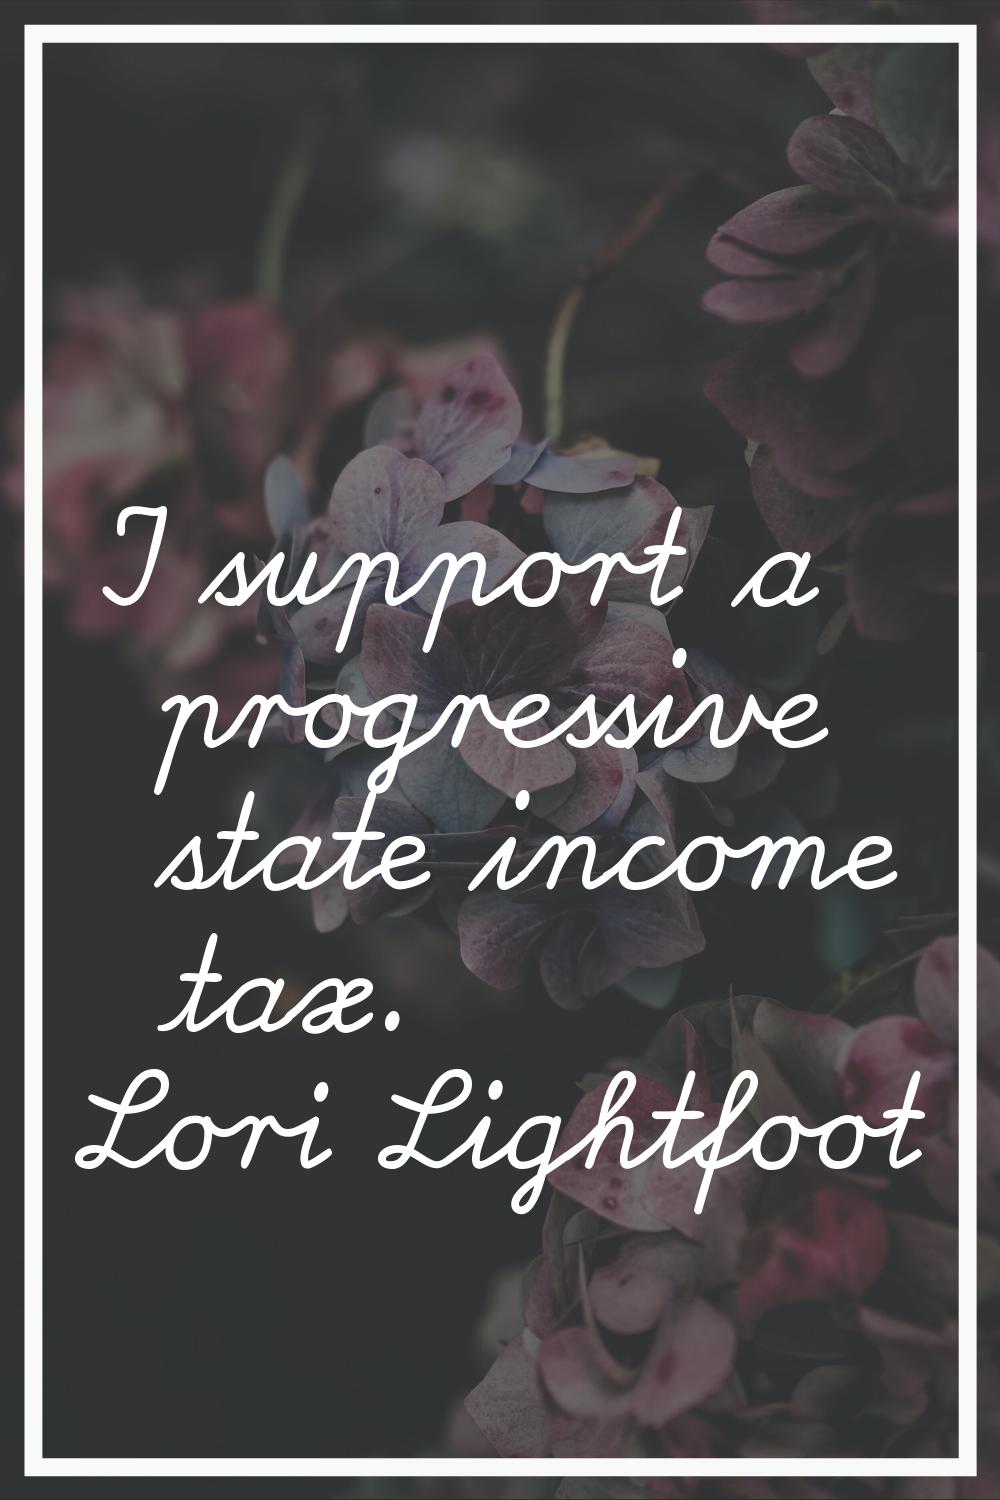 I support a progressive state income tax.